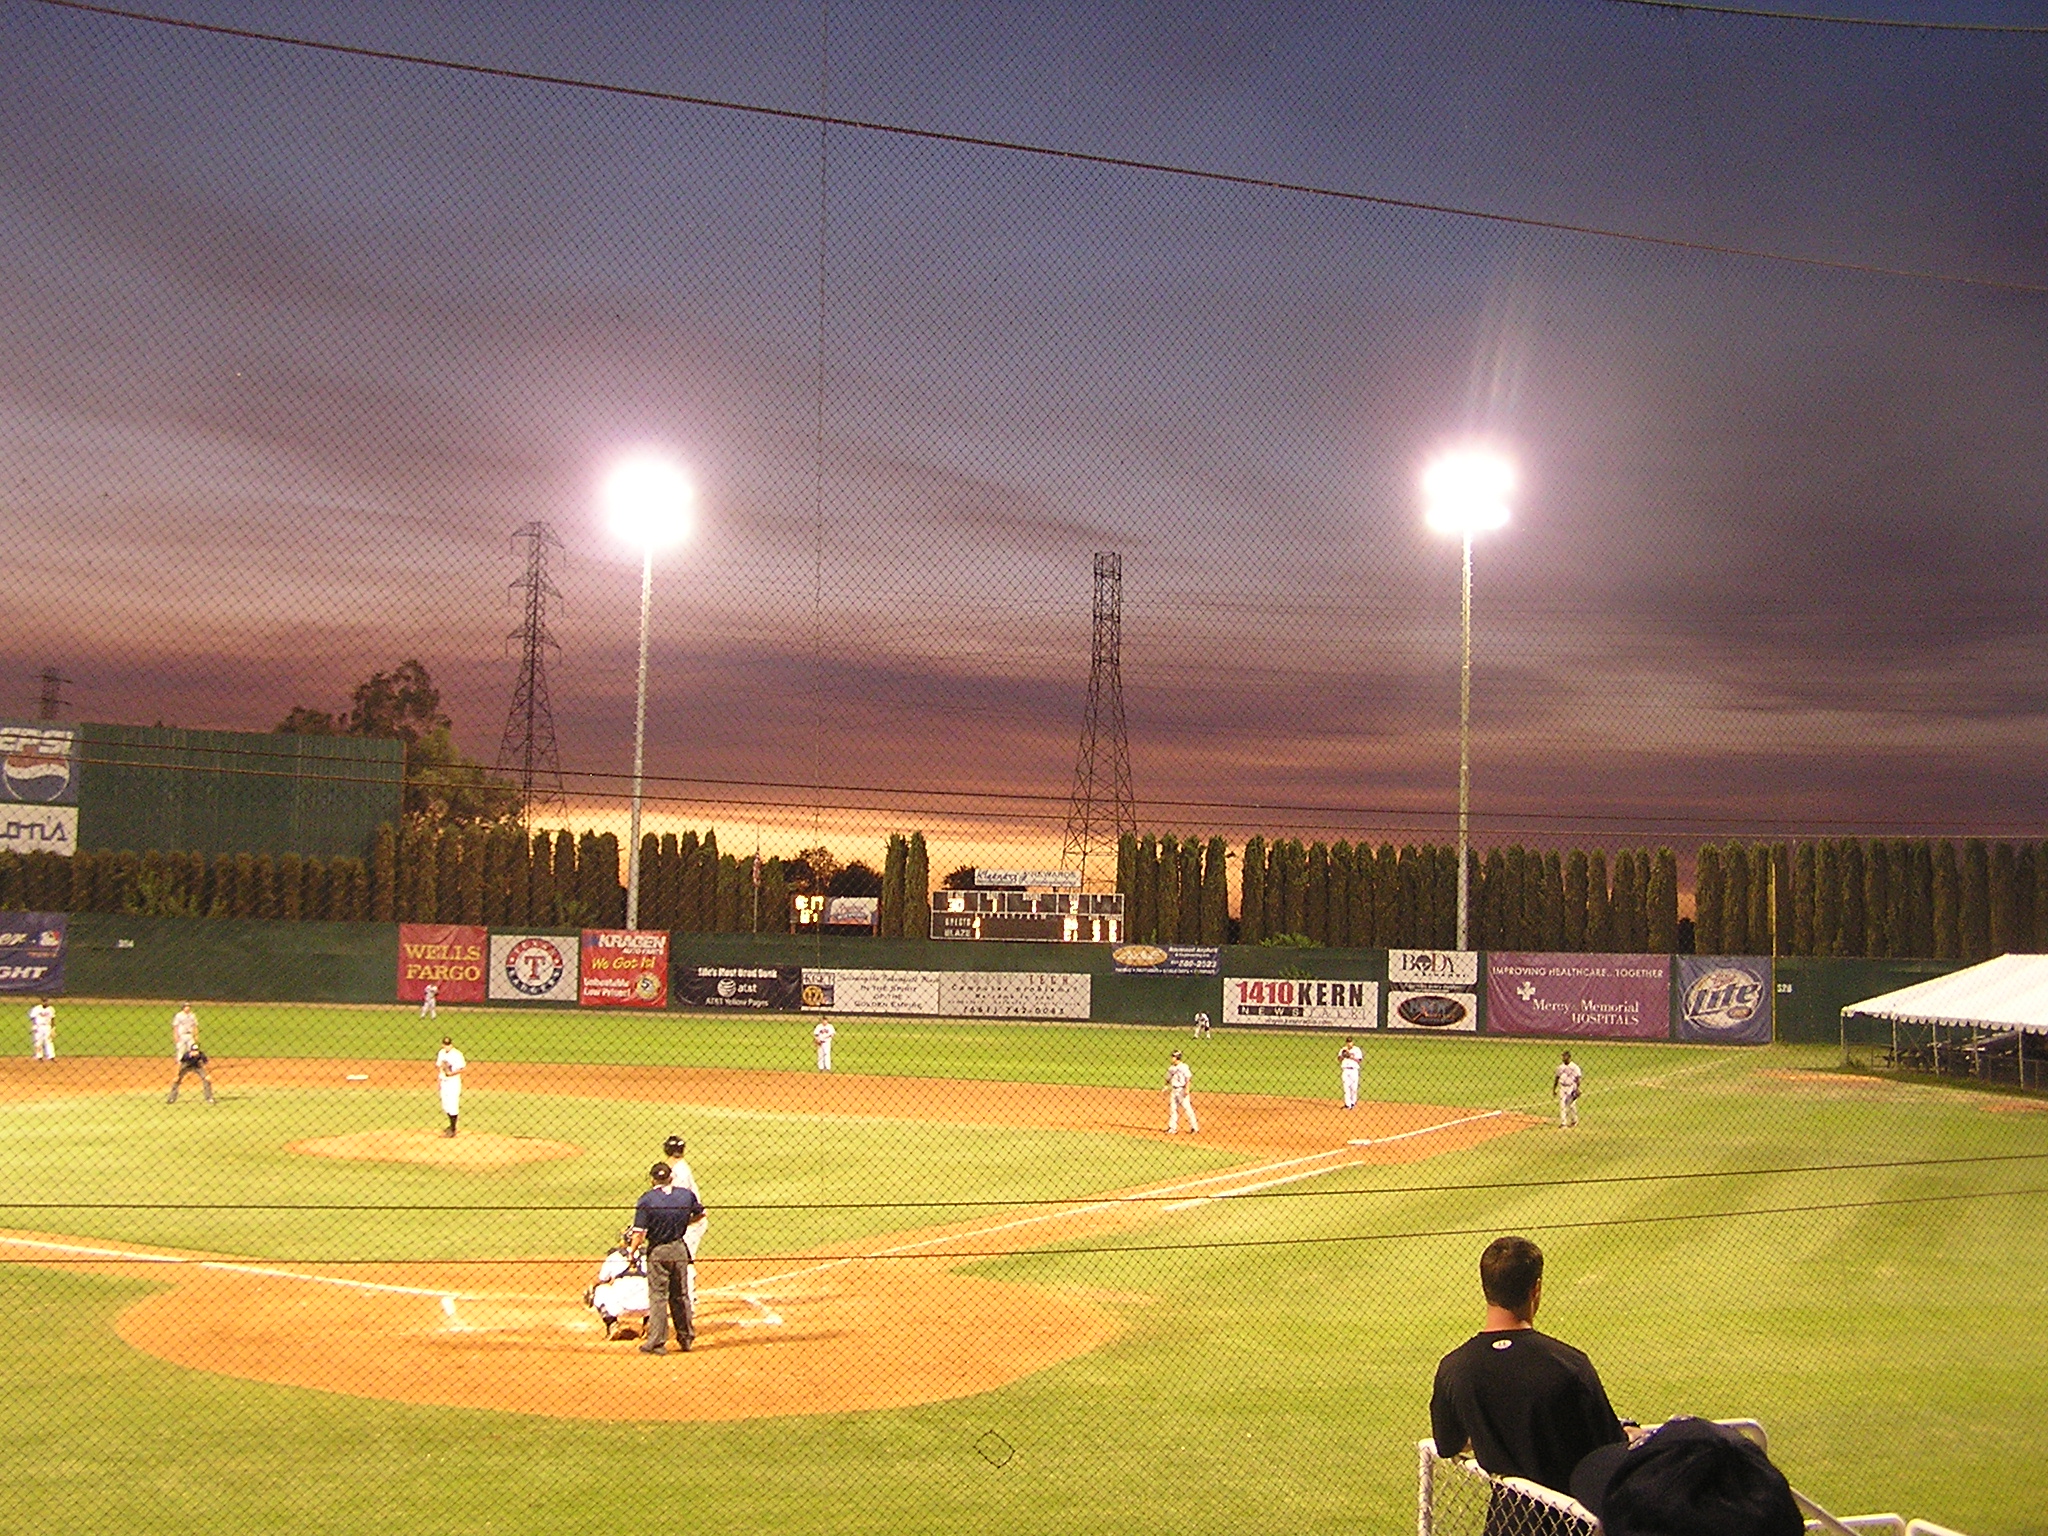 Sunset at Sam Lynn Ballpark - Bakersfield